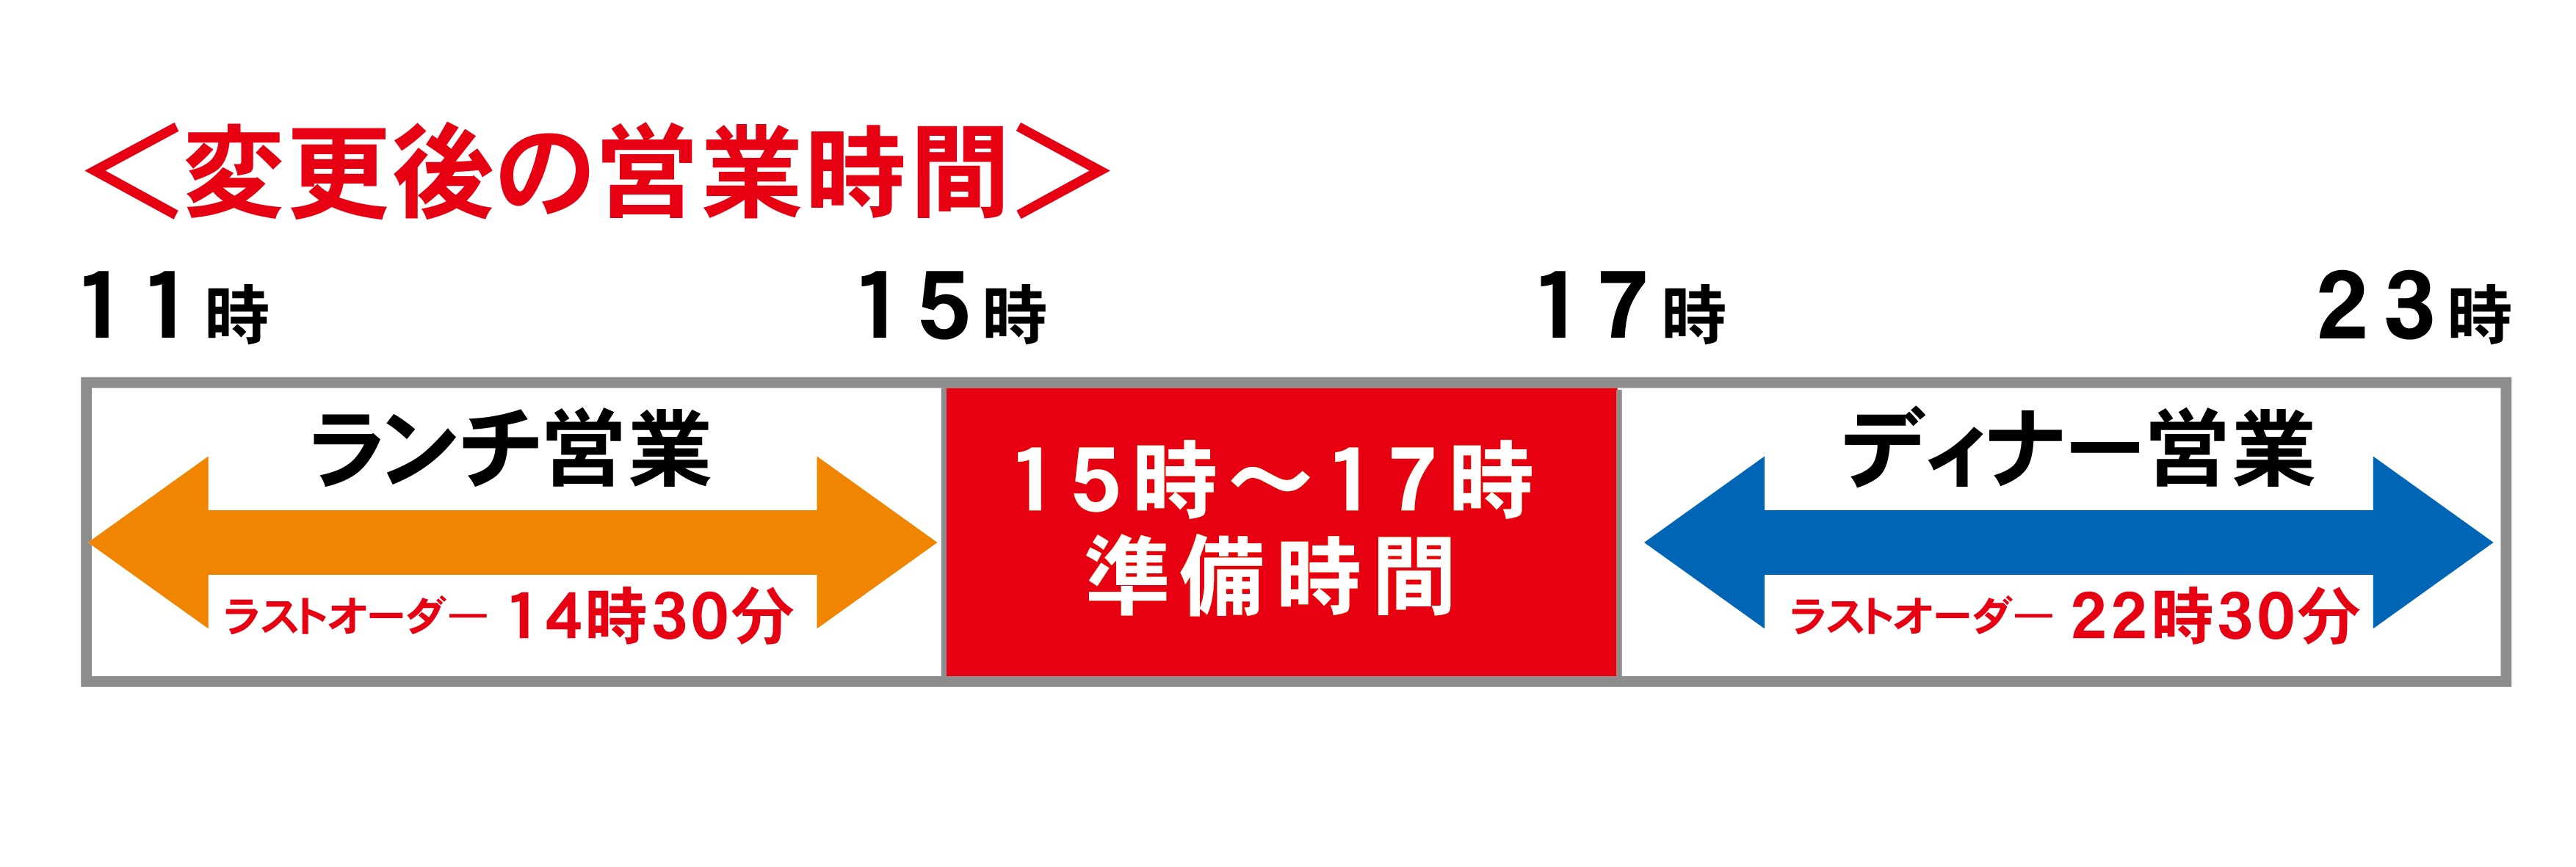 宮崎駅構内の営業時間変更